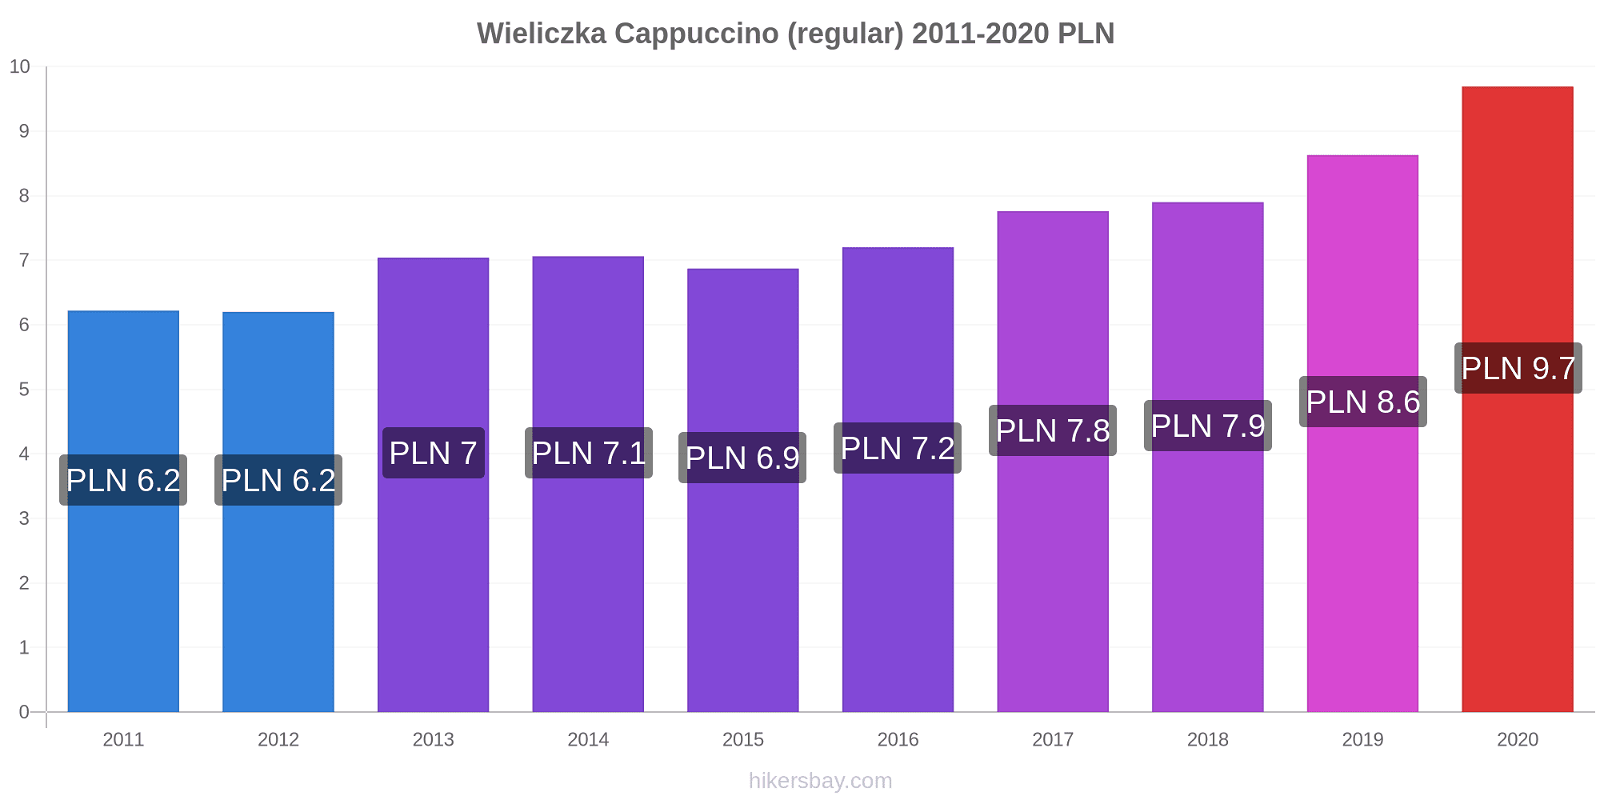 Wieliczka price changes Cappuccino (regular) hikersbay.com